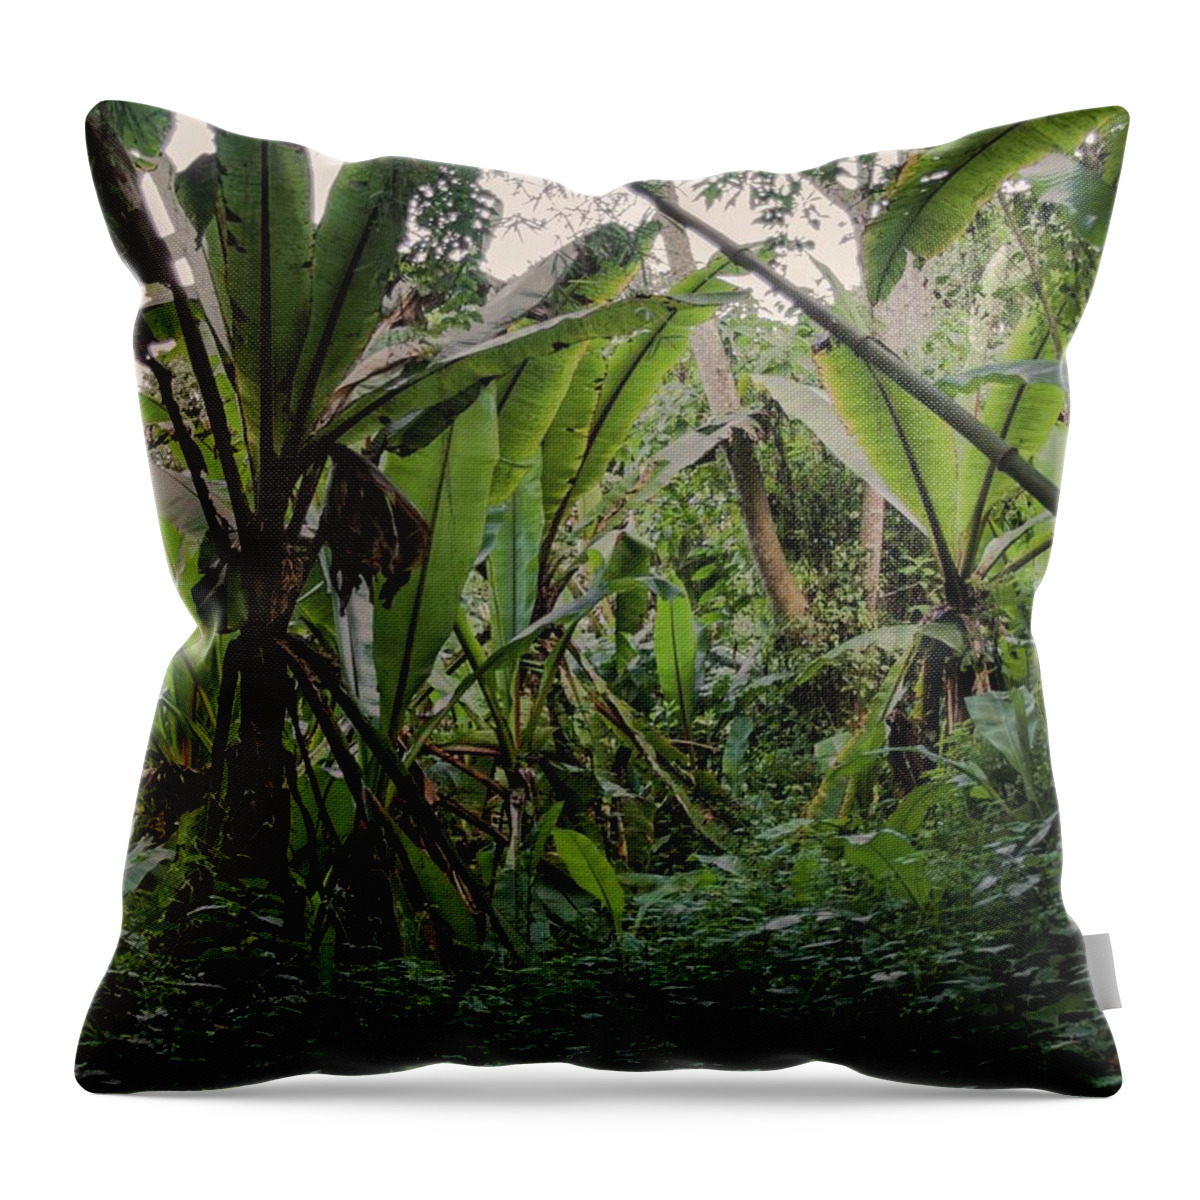 Africa Throw Pillow featuring the photograph Deep jungle #2 by Robert Grac